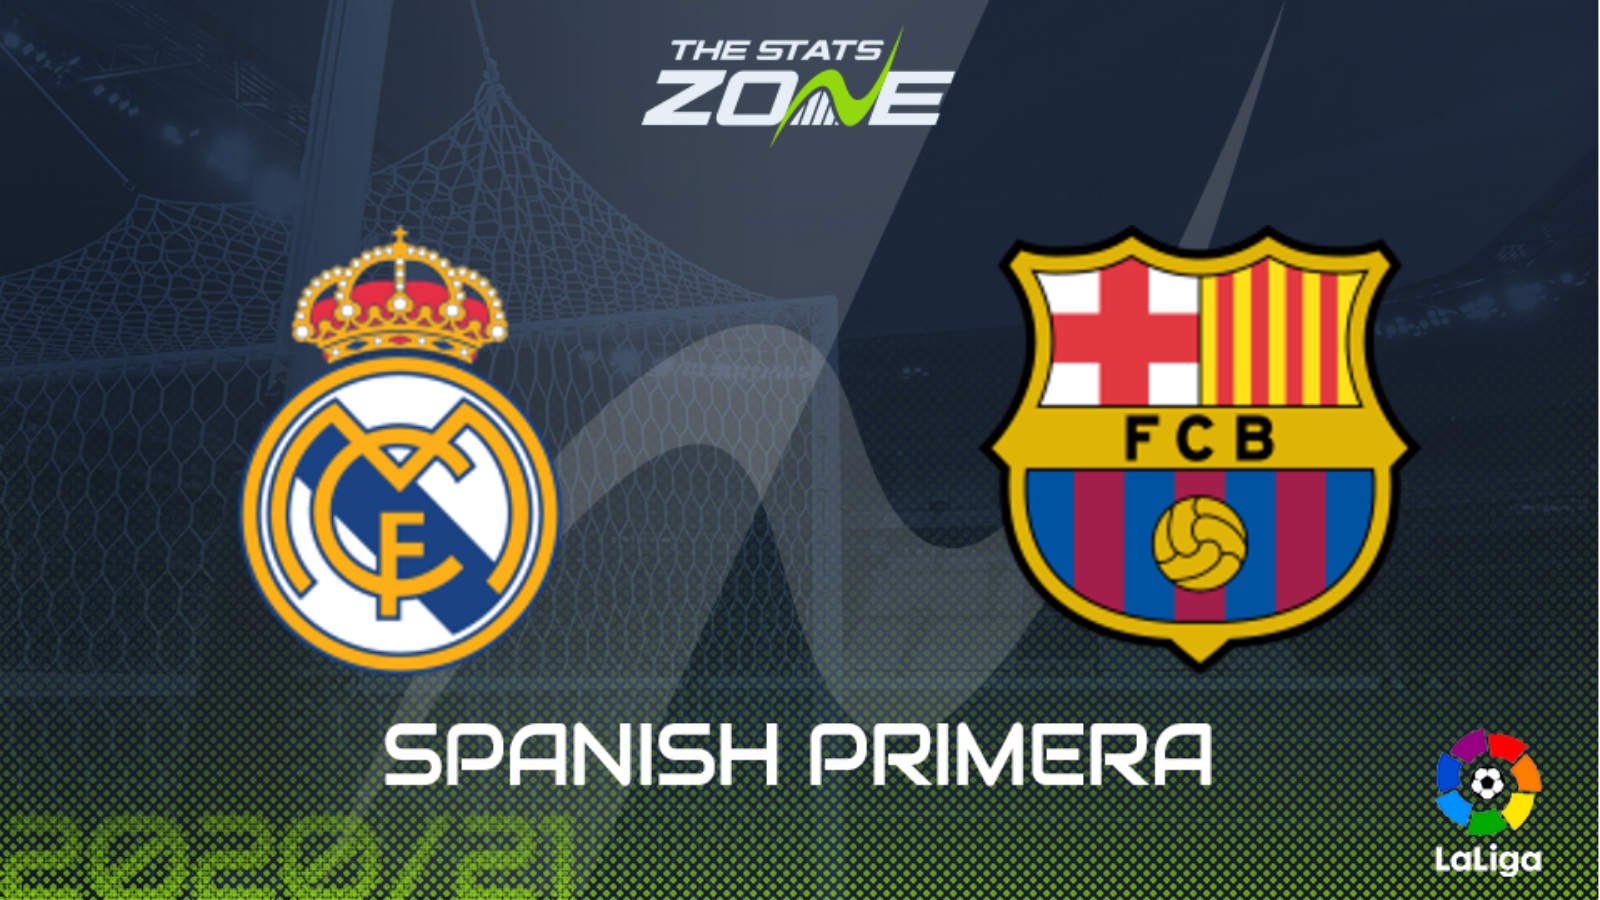 21 Spanish Primera Real Madrid Vs Barcelona Preview Prediction The Stats Zone